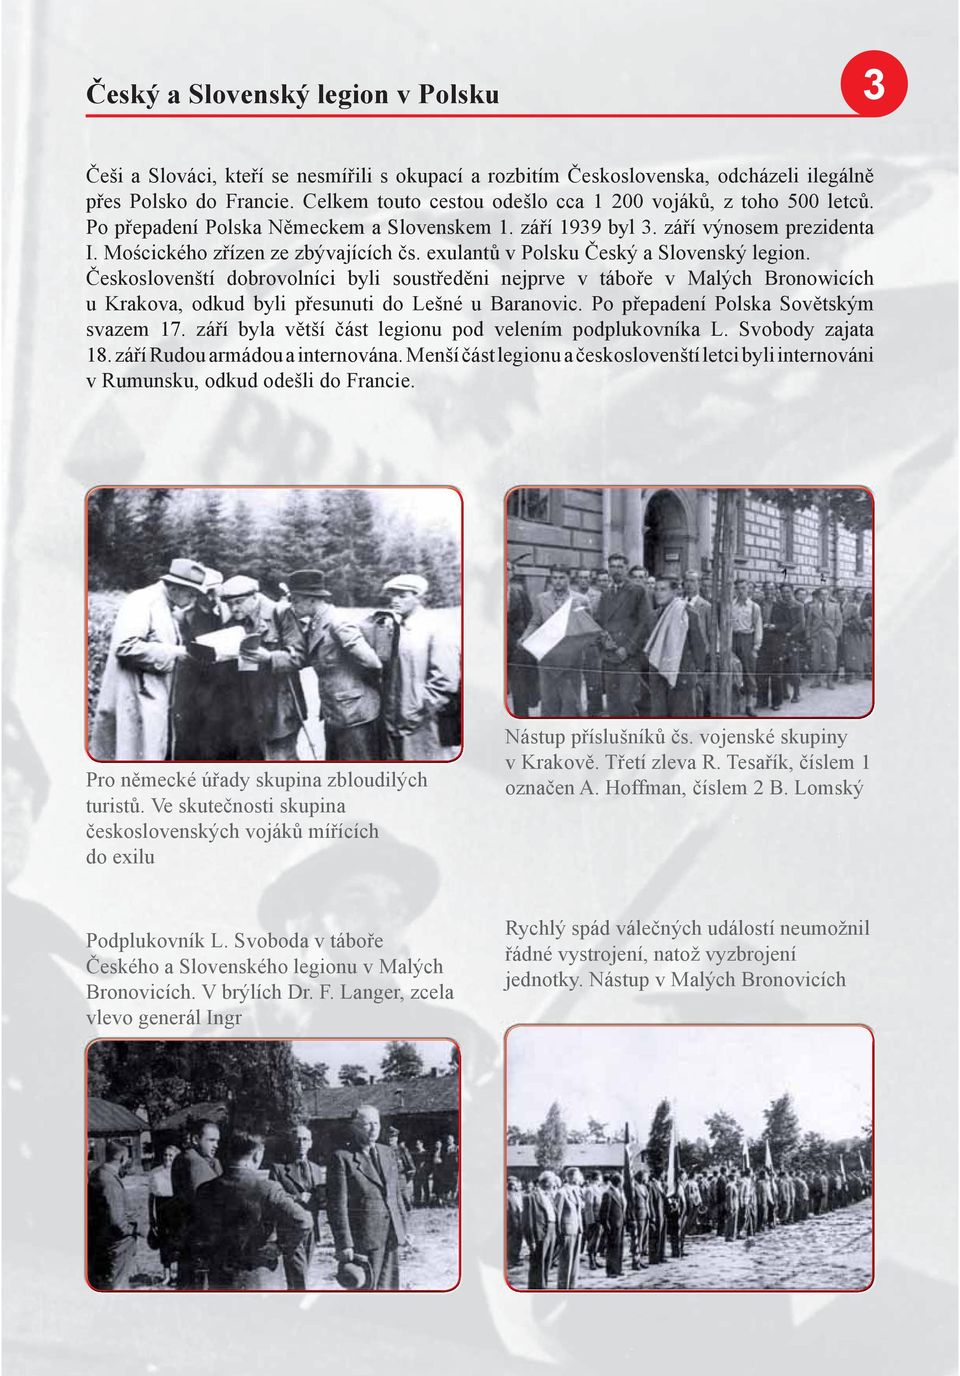 exulantů v Polsku Český a Slovenský legion. Českoslovenští dobrovolníci byli soustředěni nejprve v táboře v Malých Bronowicích u Krakova, odkud byli přesunuti do Lešné u Baranovic.